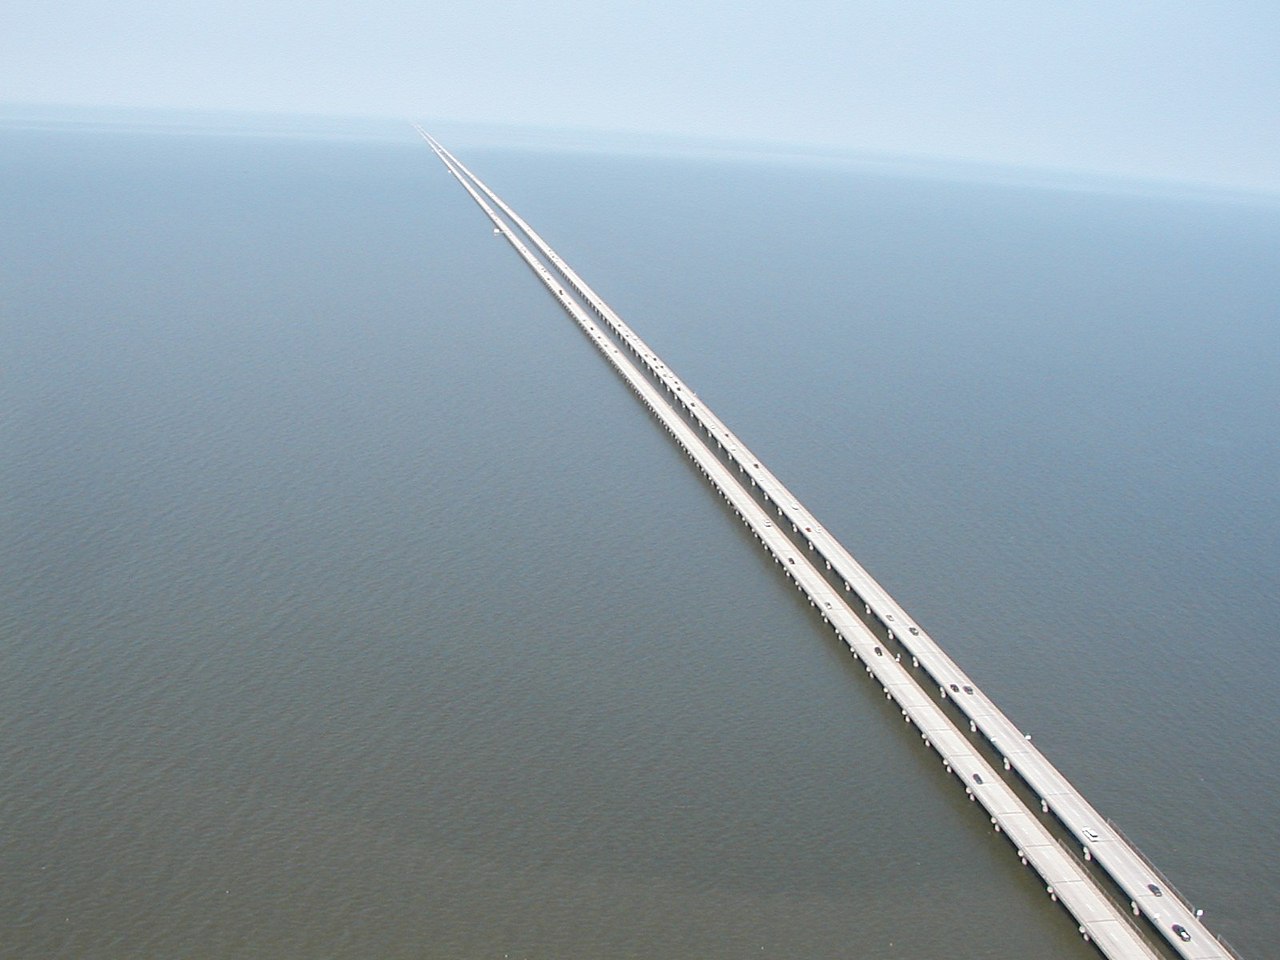 Самый длинный мост в мире над водой